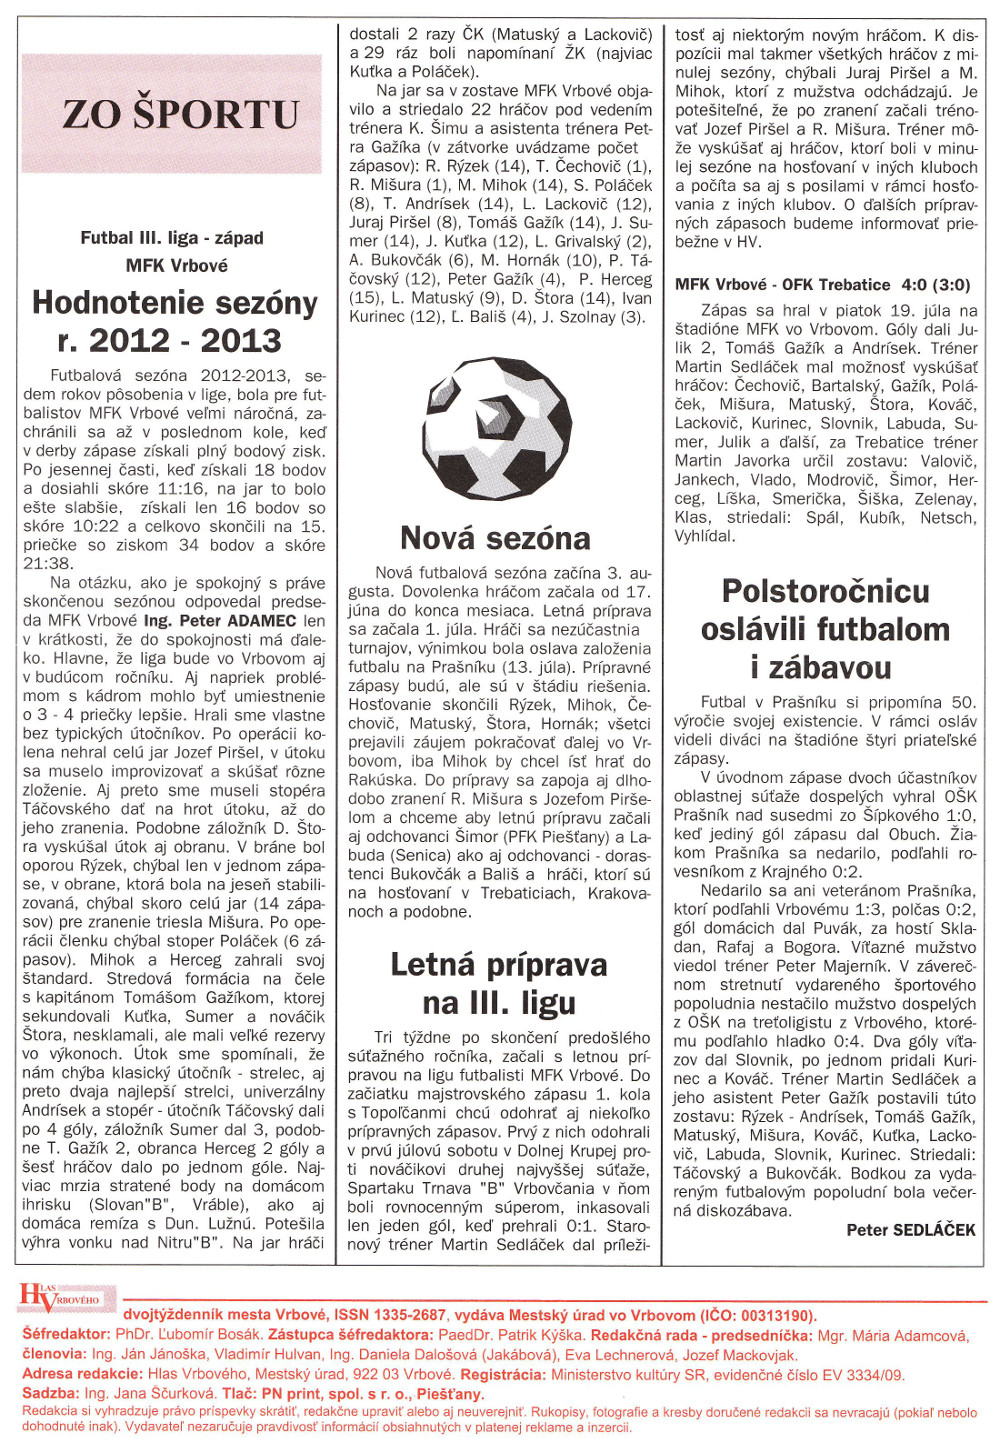 Hlas Vrbového 16/2013, strana 16